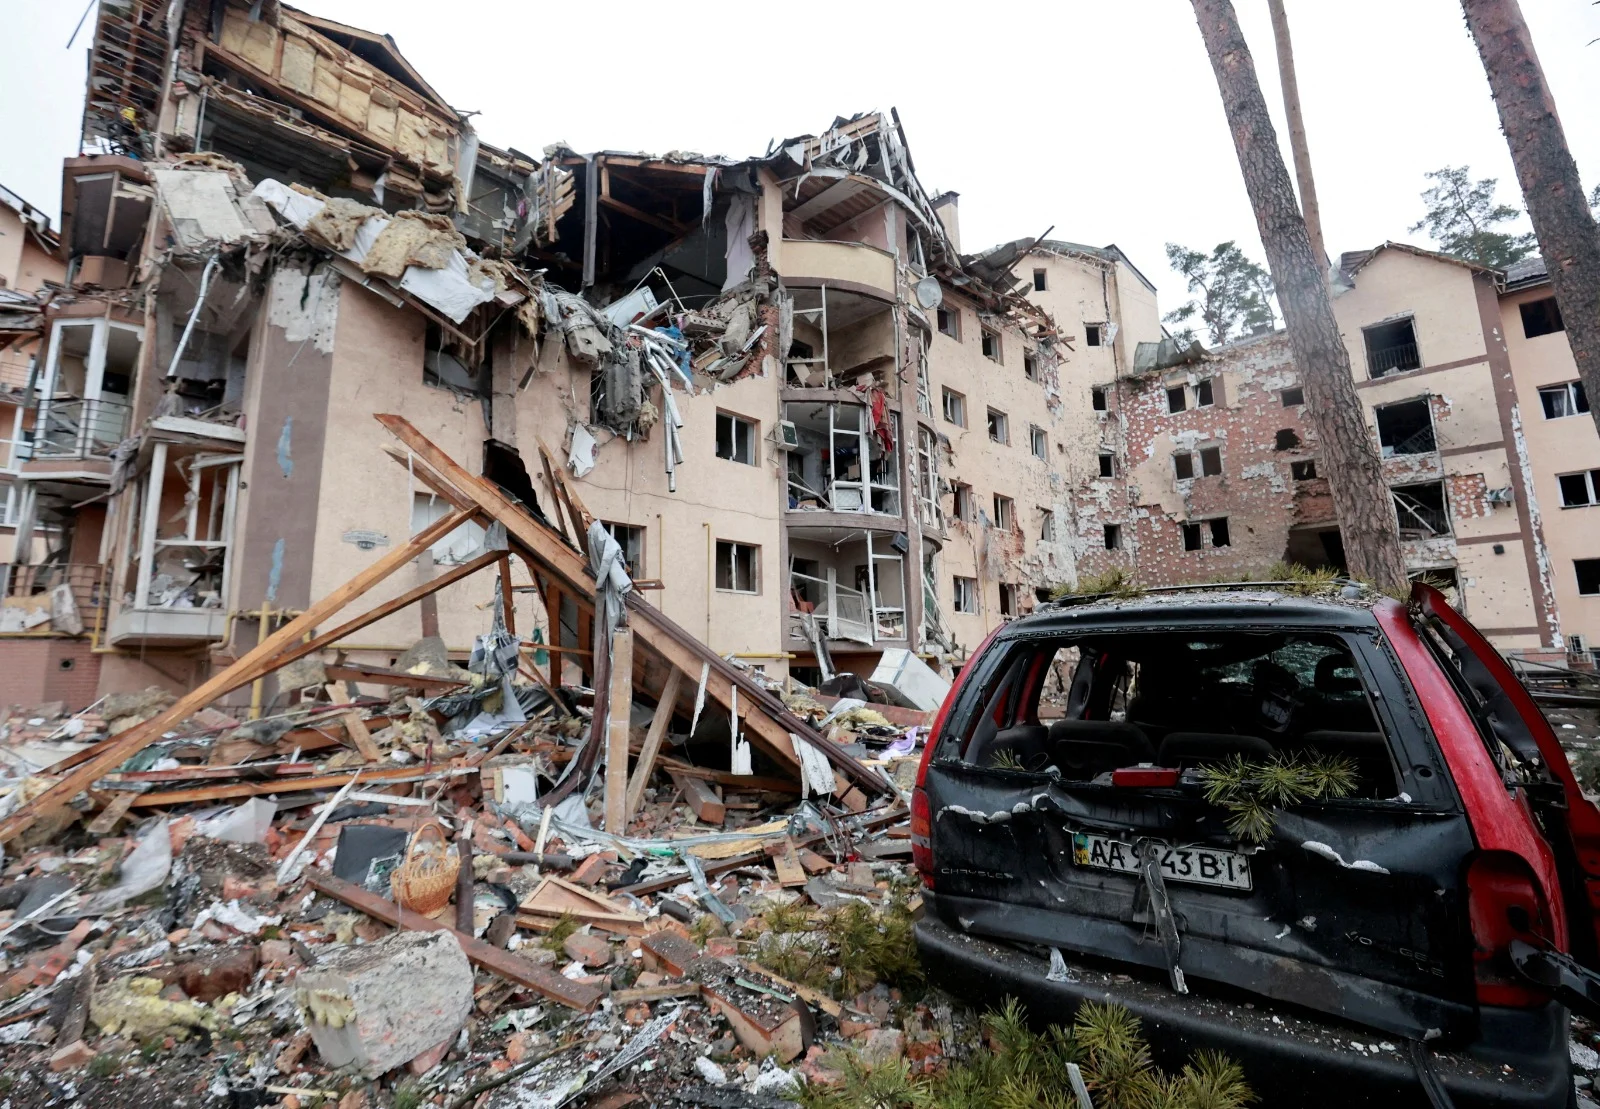 בניין מגורים ומכונית שנהרסו בהפגזות על העיר אירפין הסמוכה לקייב